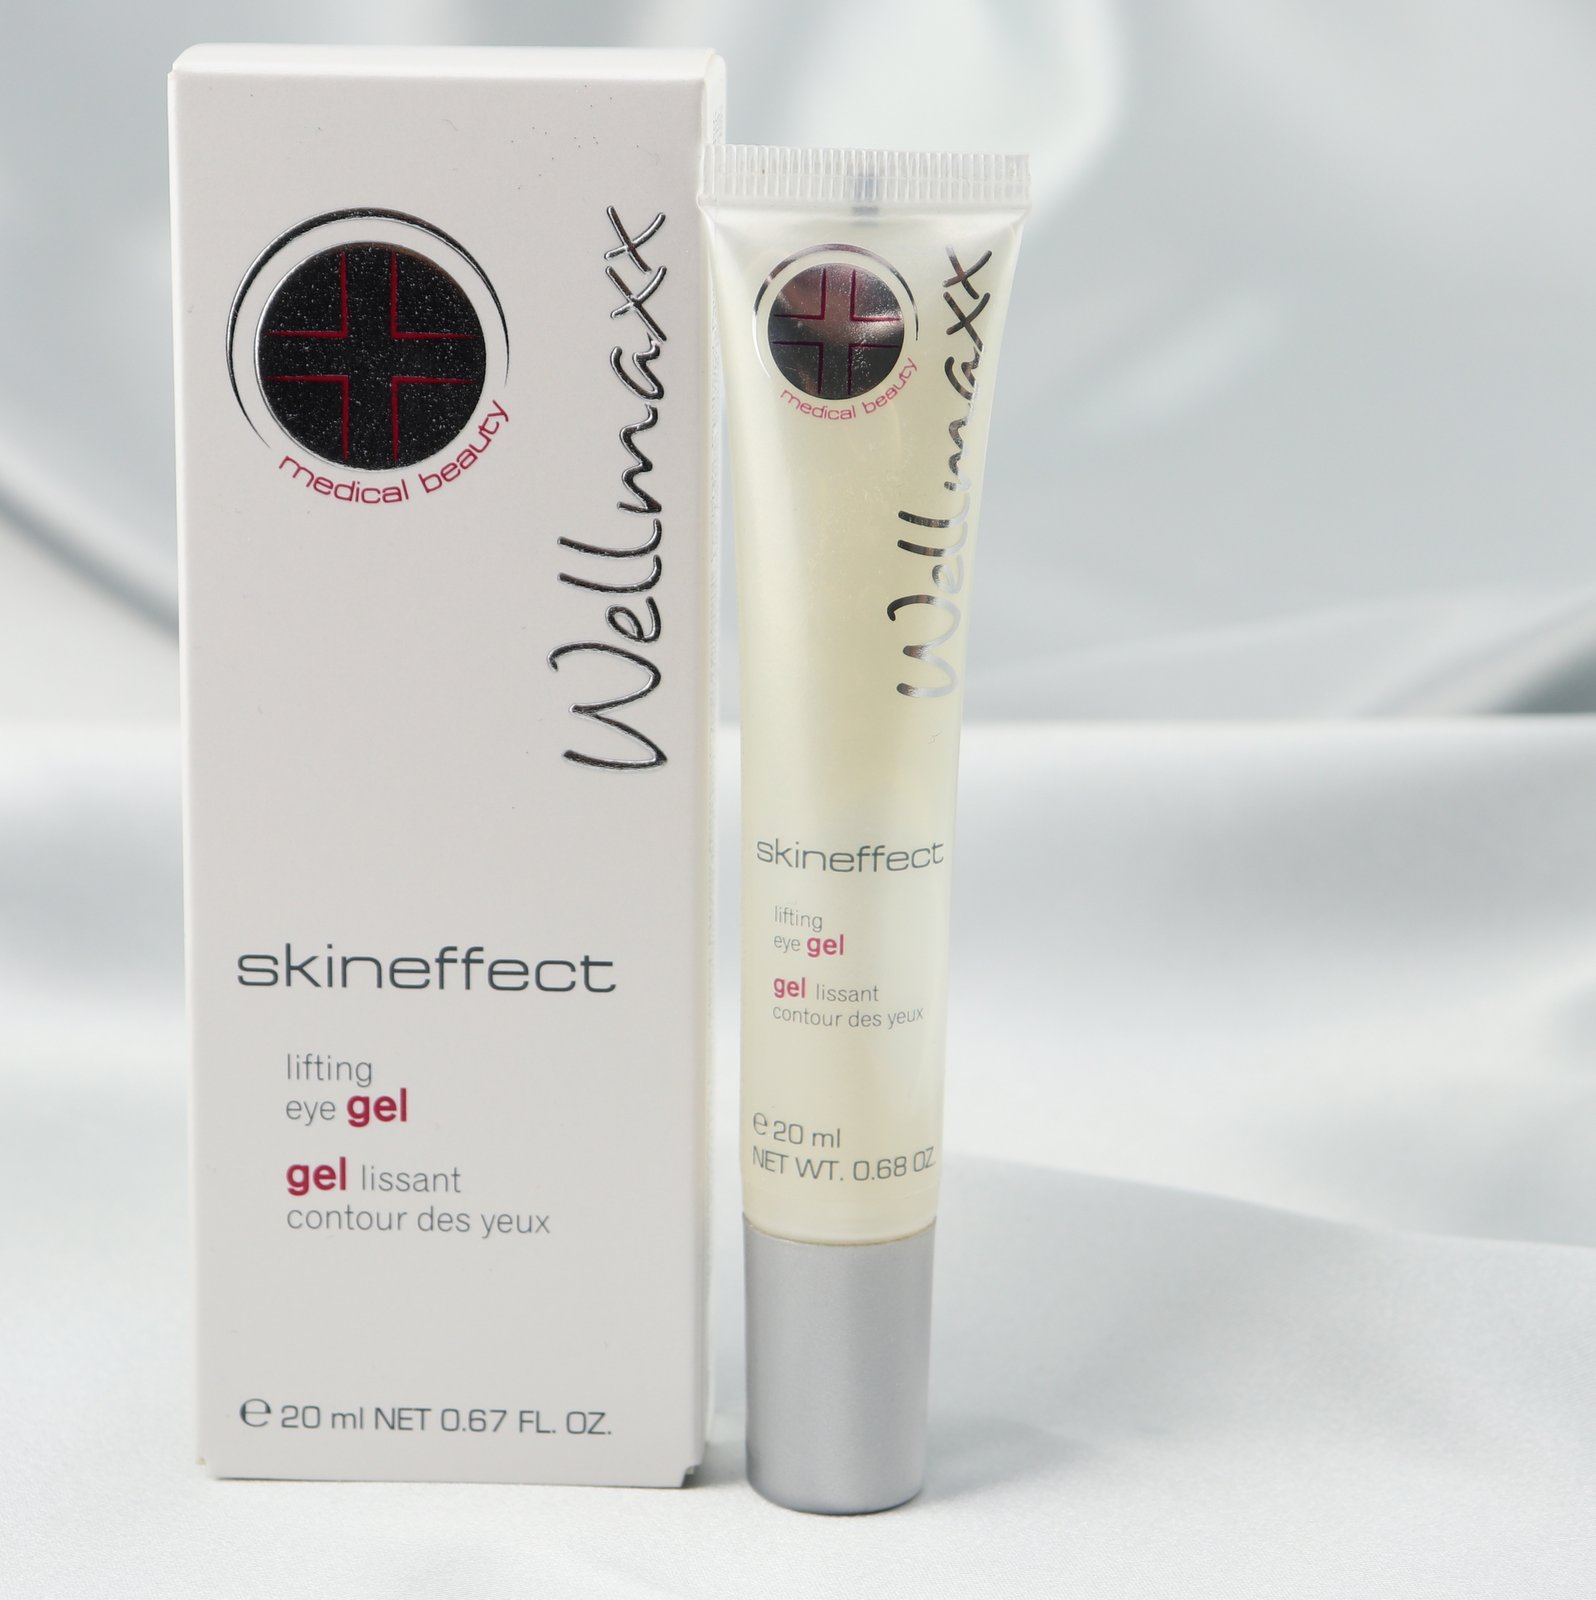 Skineffect lifting eye gel, Augencreme, makeupcoach.com